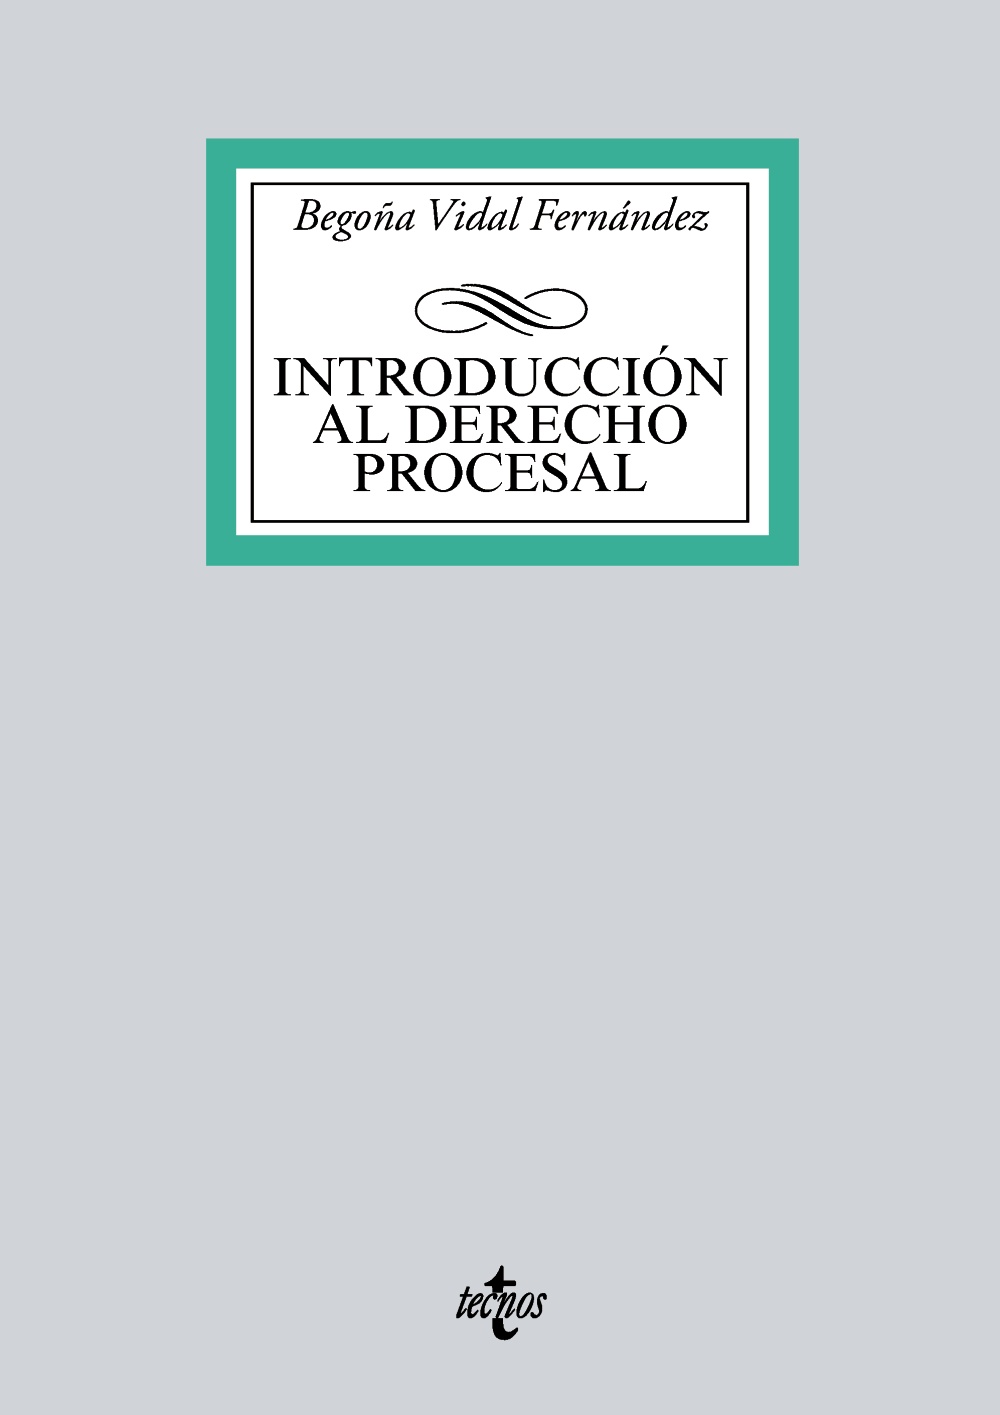 Imagen de portada del libro Introducción al derecho procesal